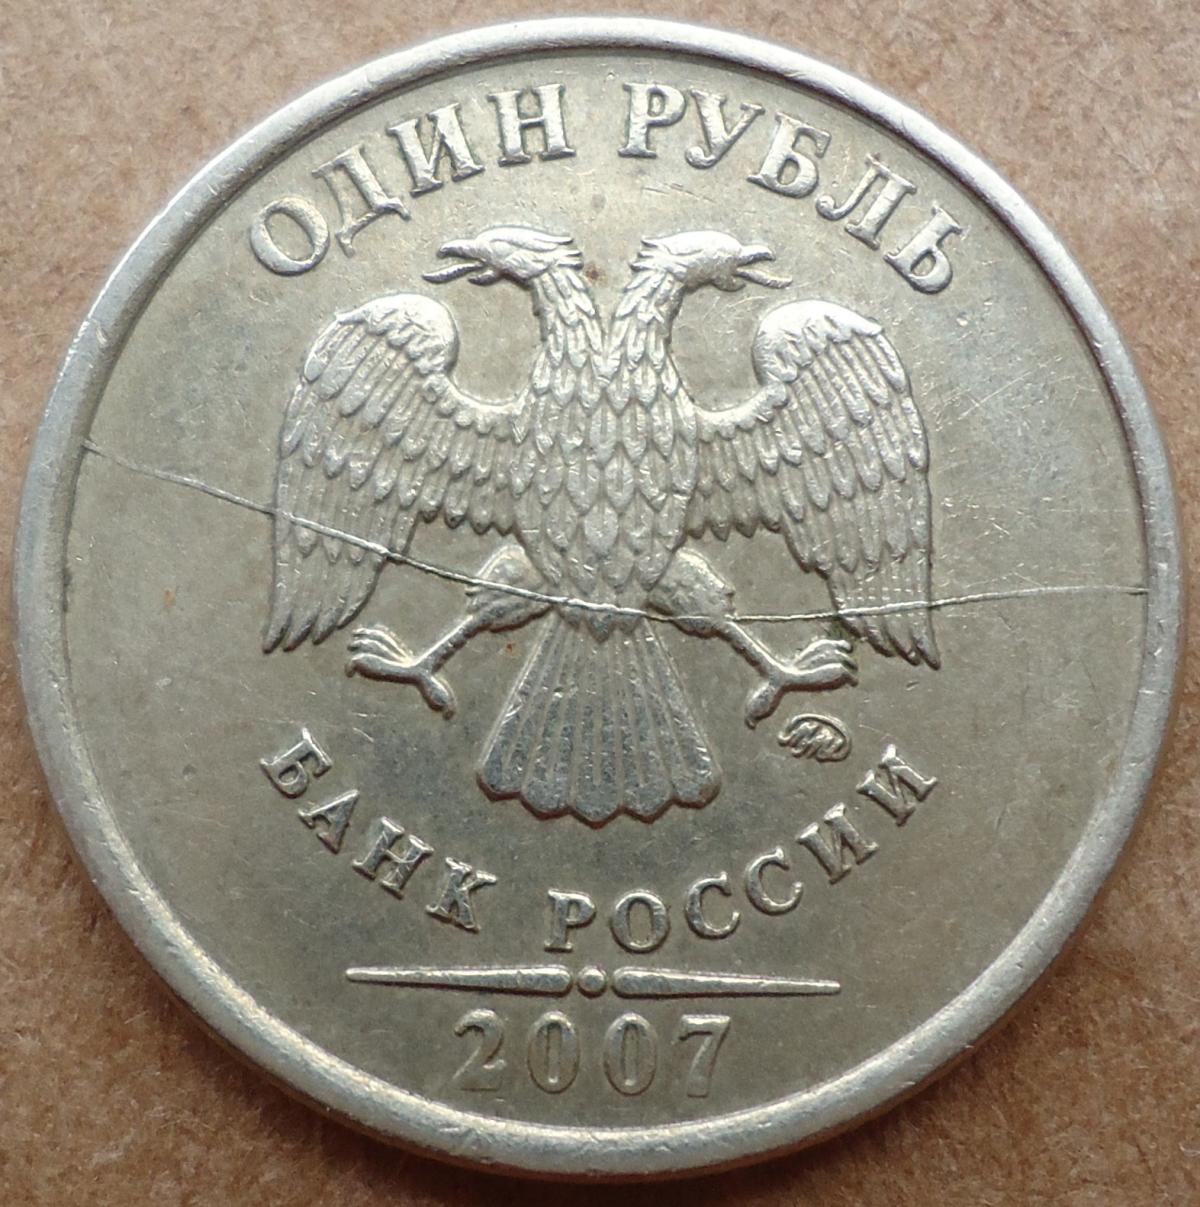 Цена 1 рубля квадратные. Ценные монеты 1 рубль. Редкие монеты 1 рубль. Ценные монеты России года 1 рубль. Р1 2007.